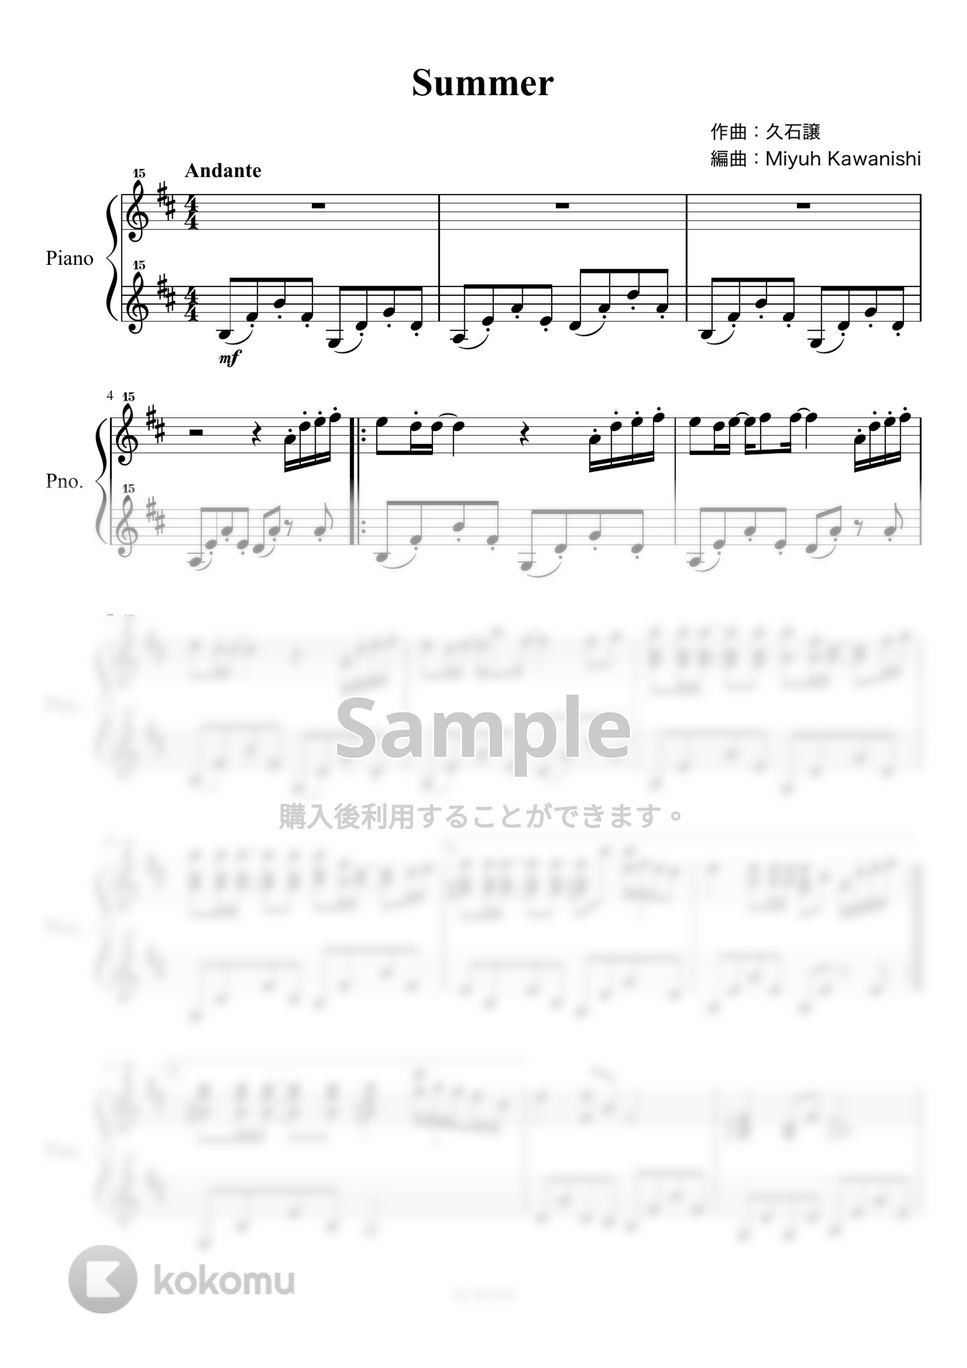 久石譲 - Summer (菊次郎の夏 / トイピアノ / 32鍵盤) by 川西三裕